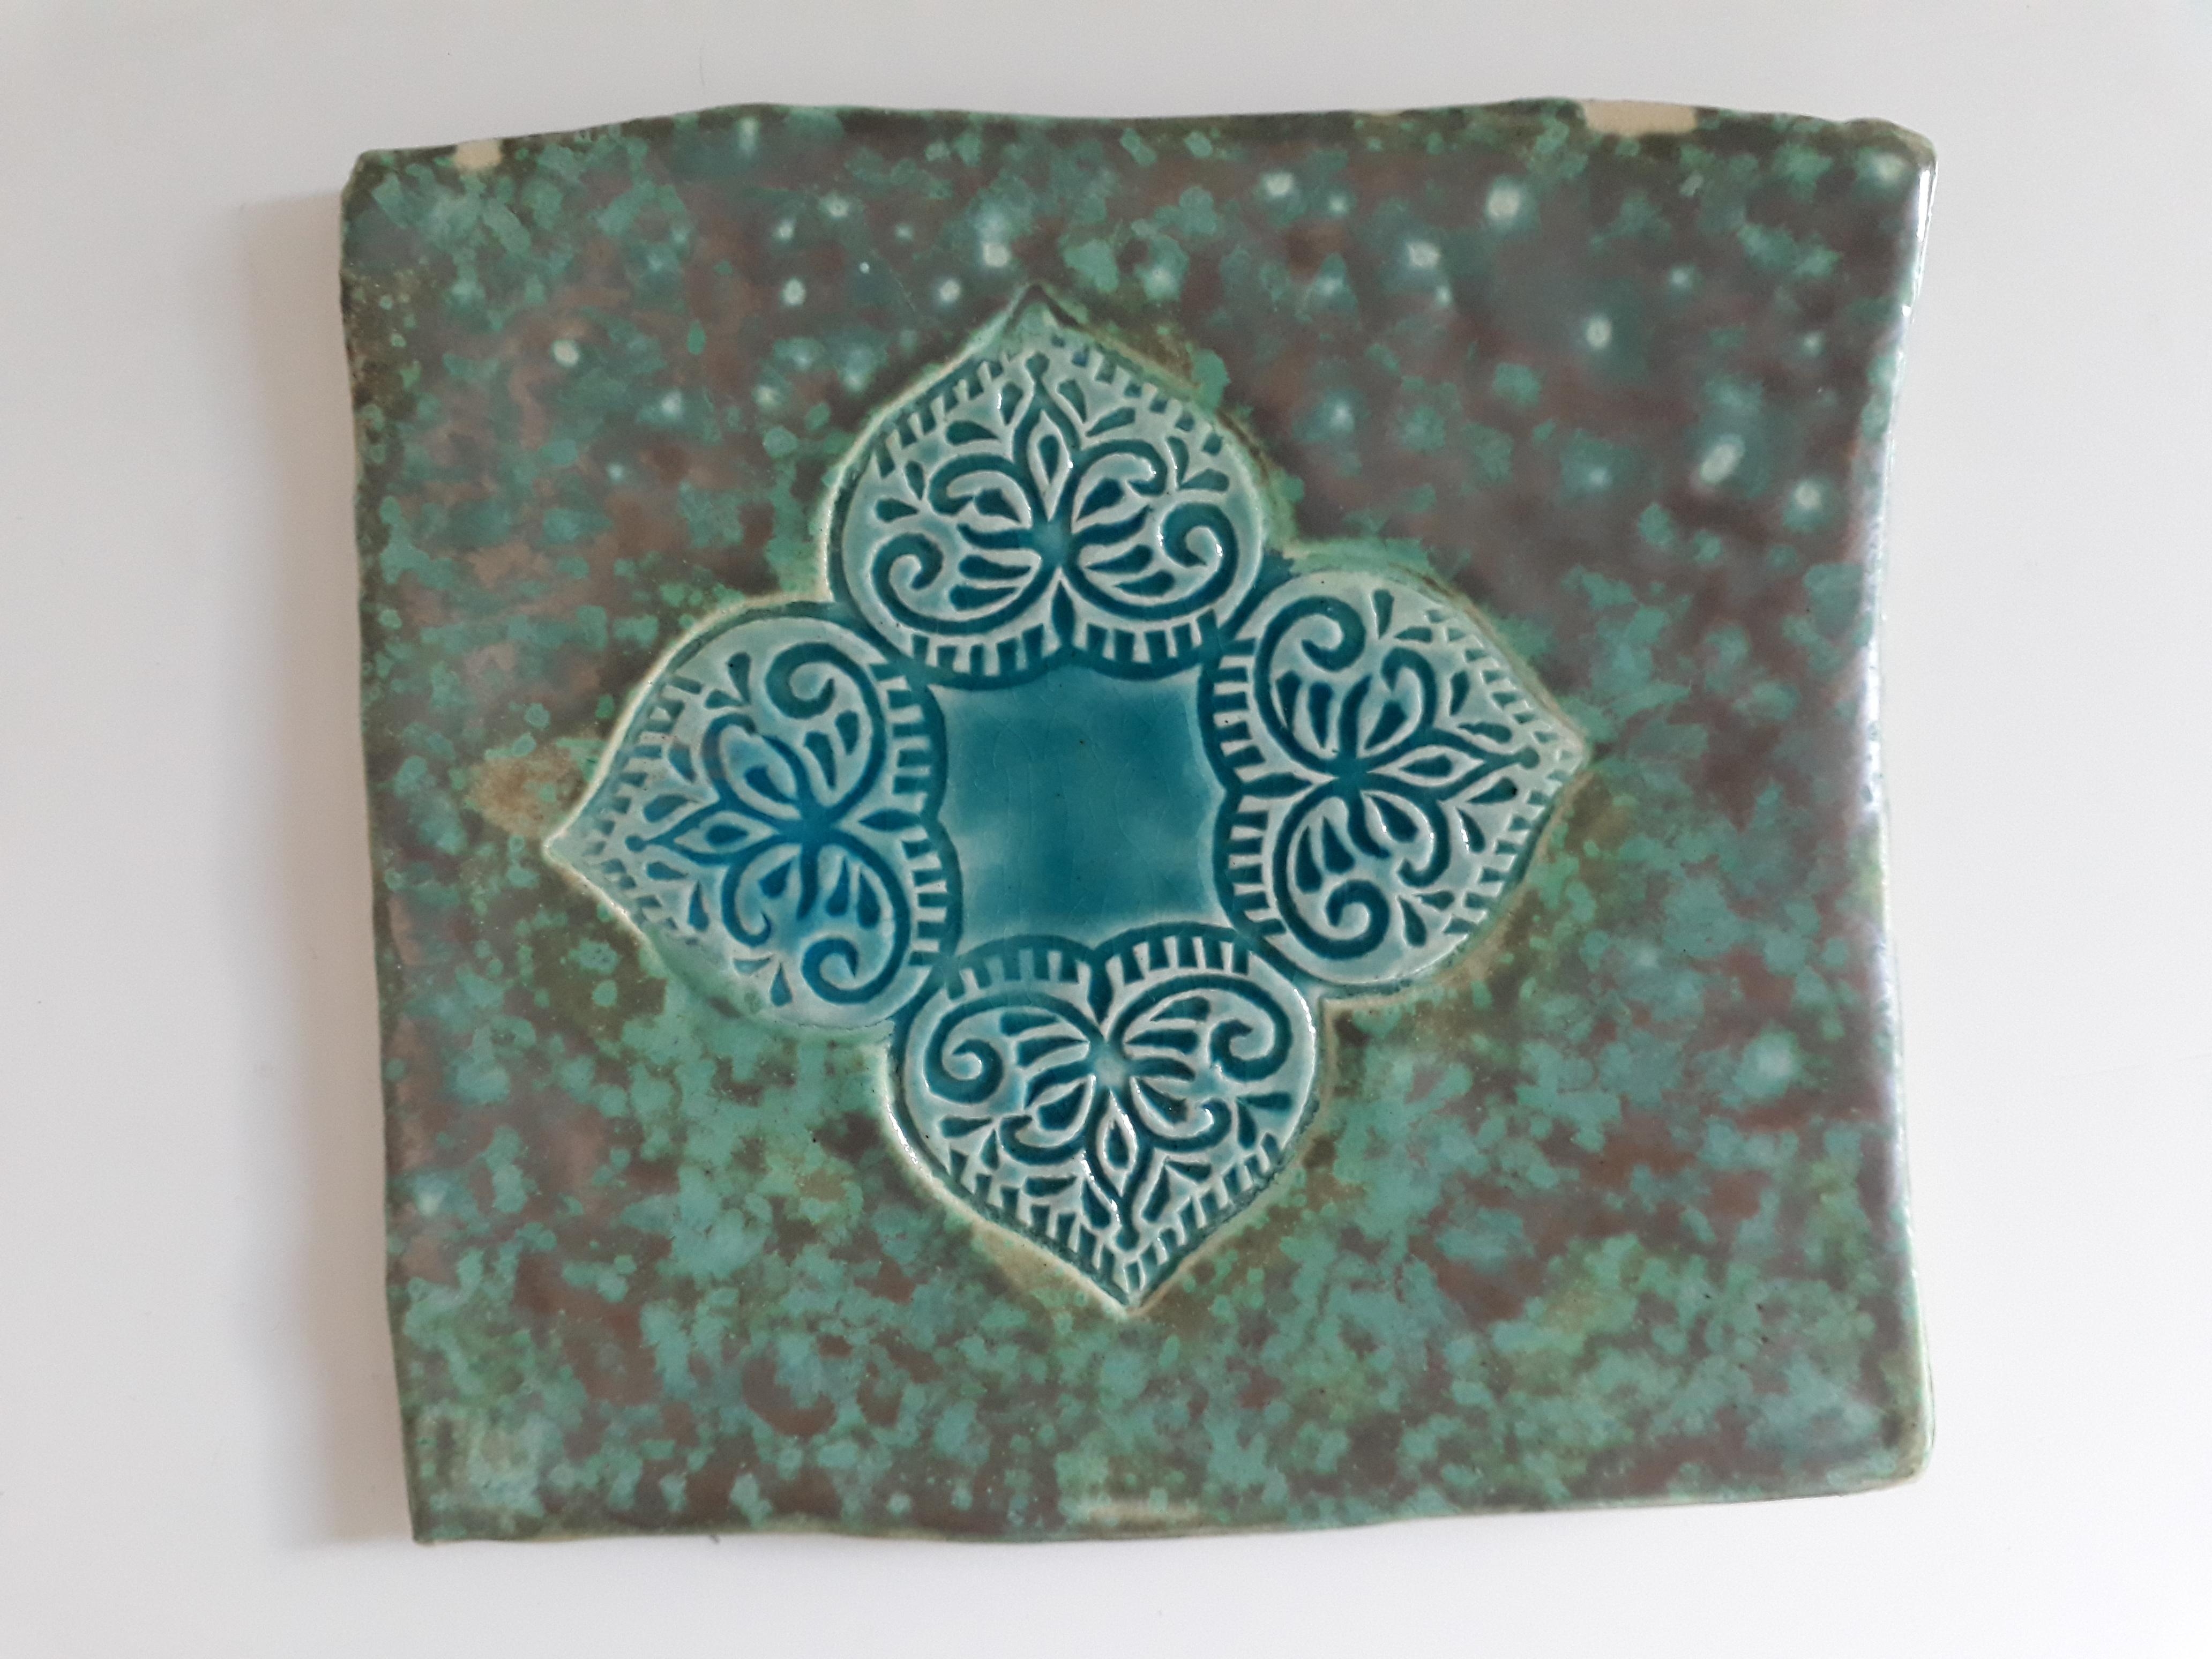 Noch eine selbstgrmachte Fliese aus Ton, selbst geformt und gemalt #DIY #pottery #deko